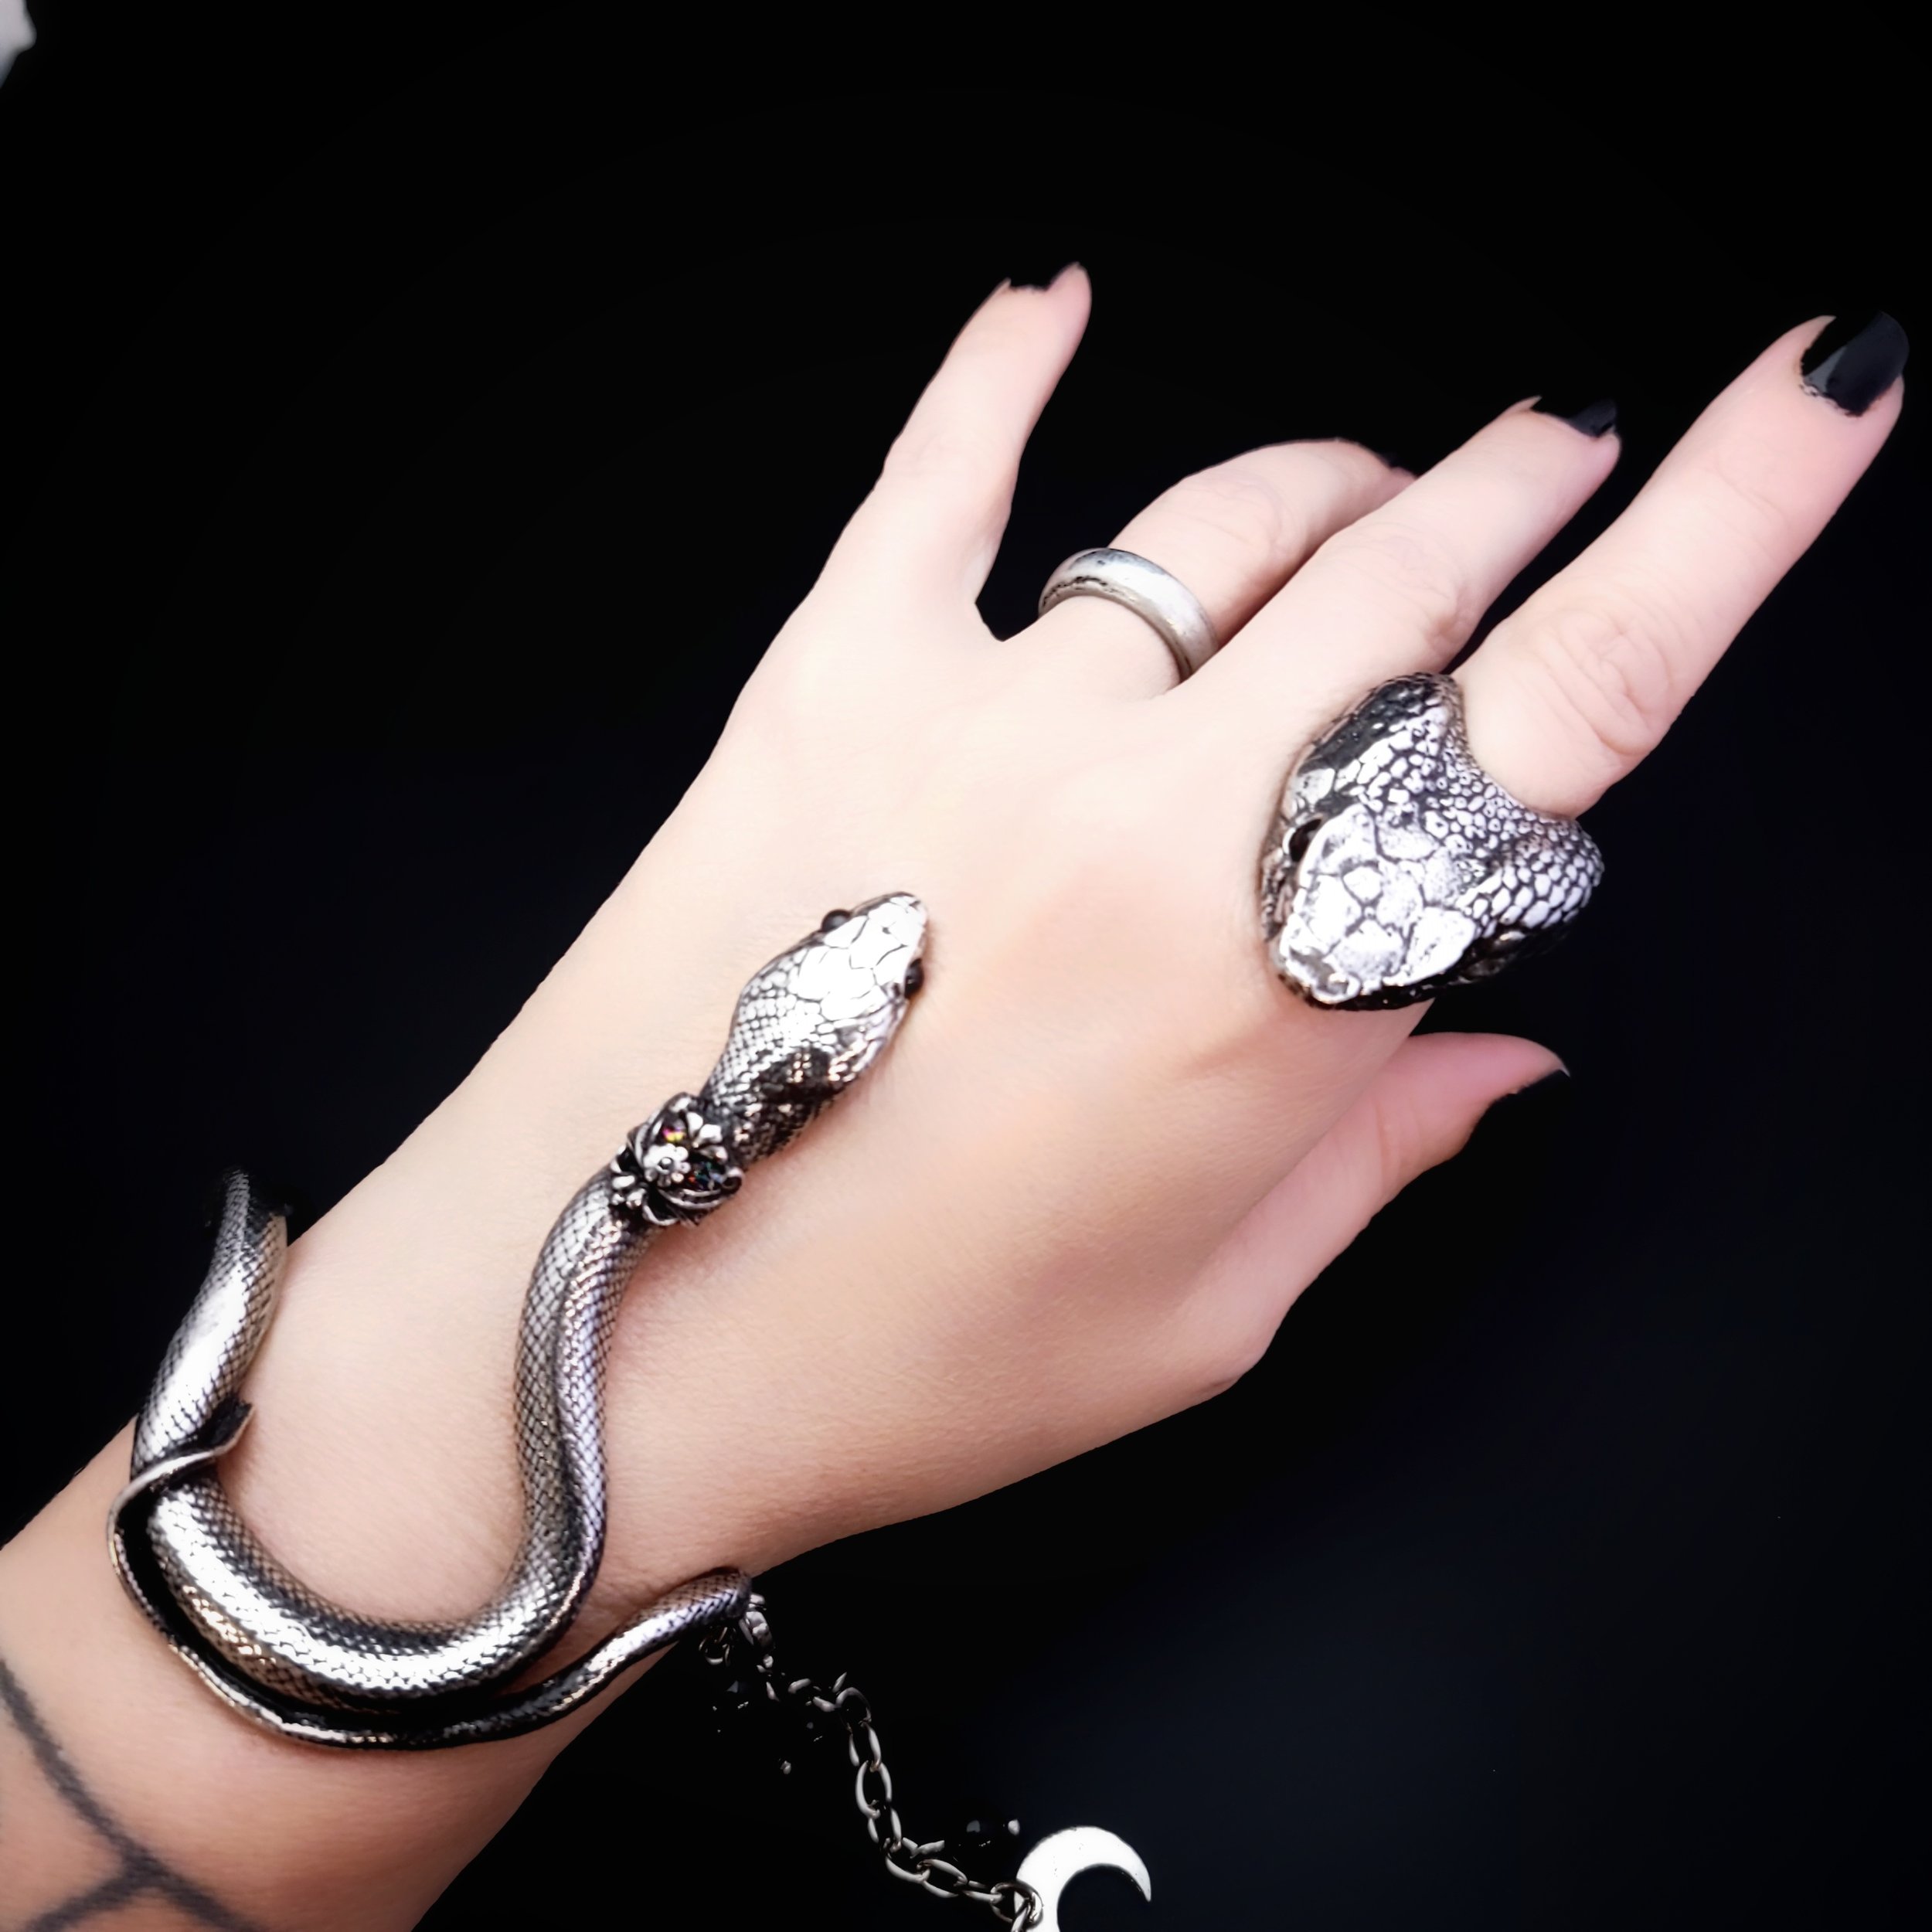 Vintage silver snake bracelet and ring set – Meraki Mirakel